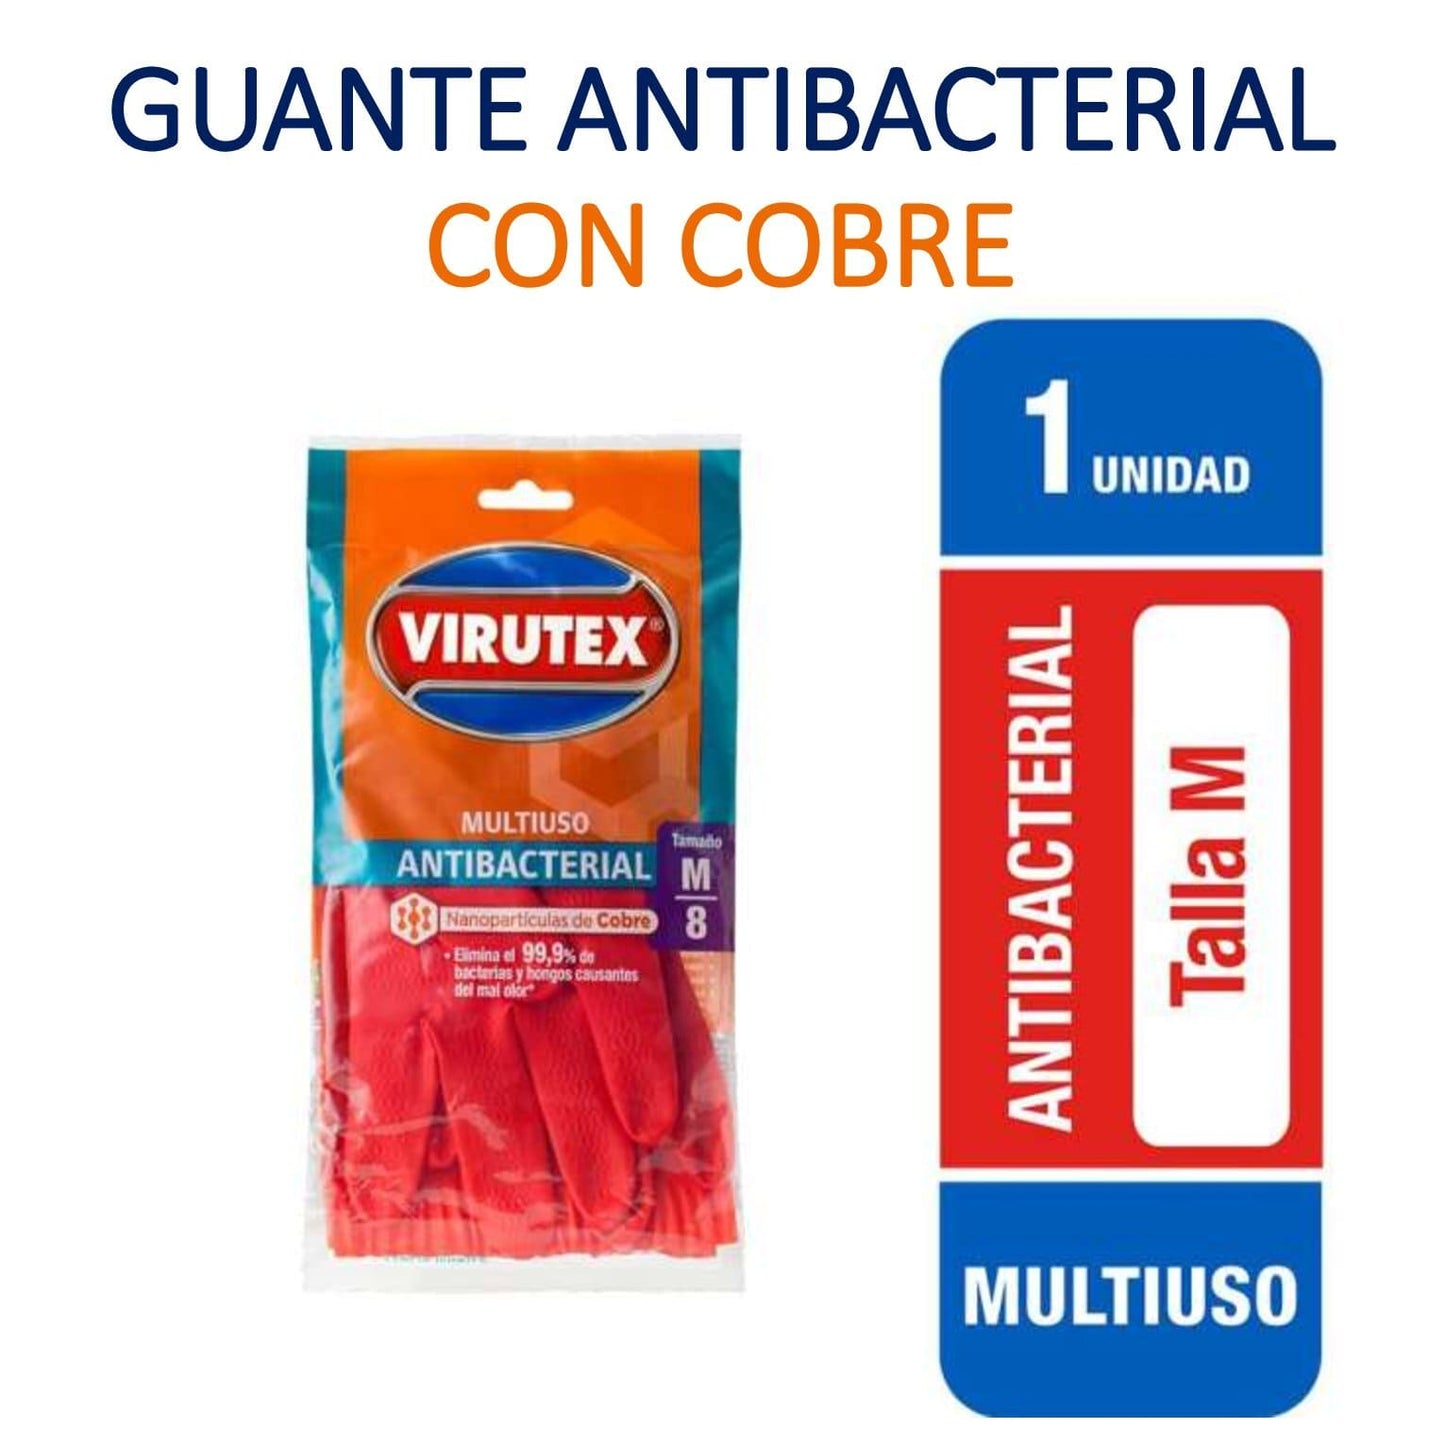 Guante Antibacterial CON COBRE